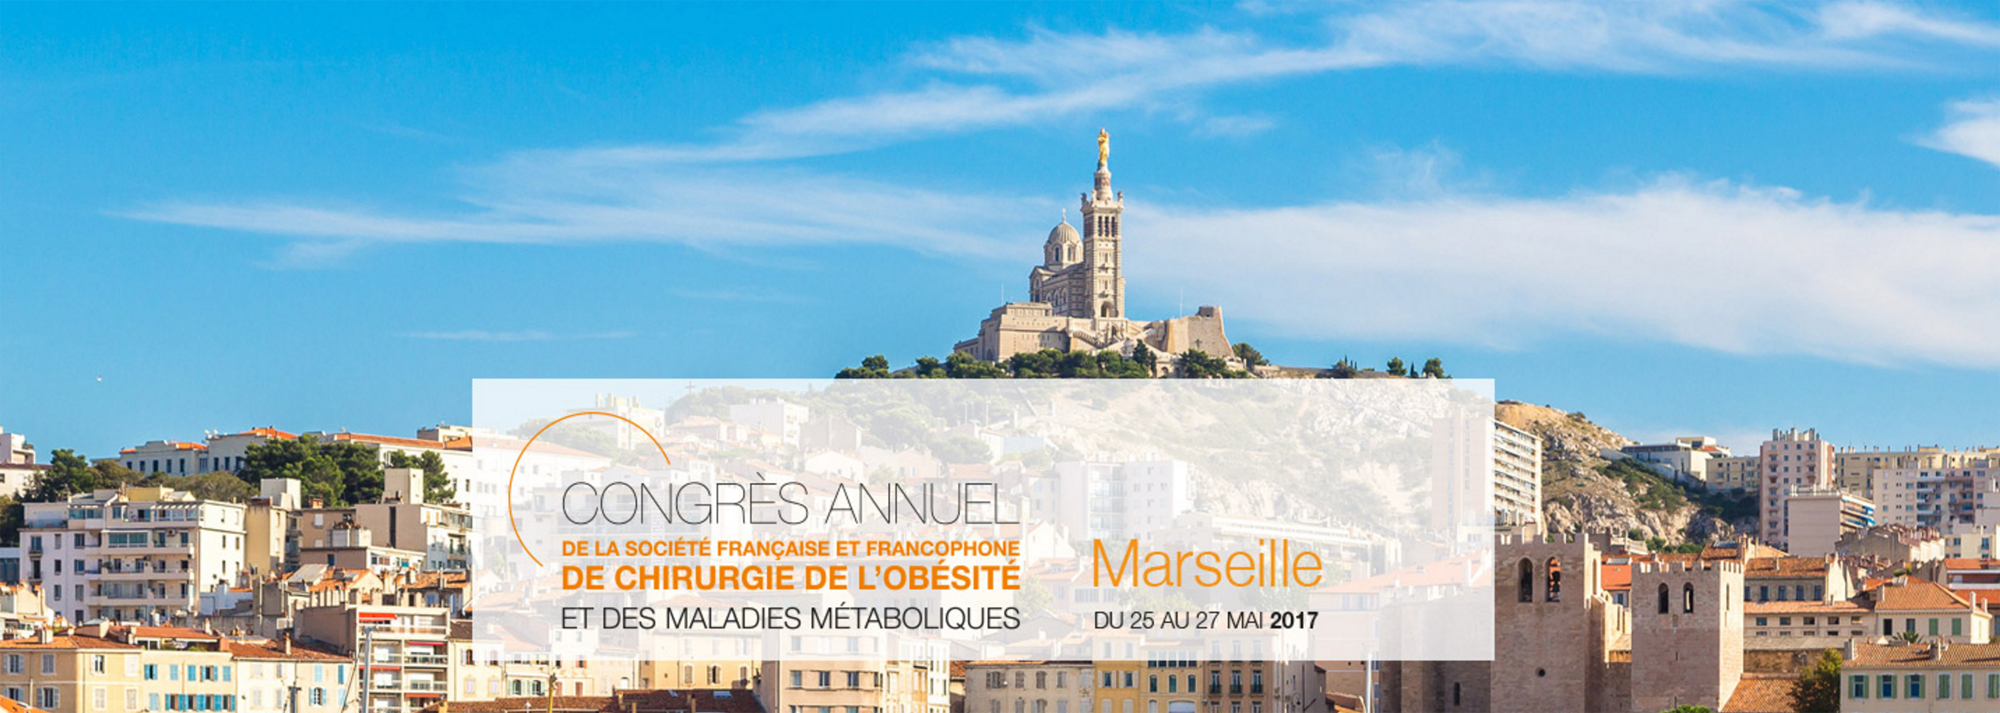 Congrès SOFFCO à Marseille autour de la chirurgie de l'obésité